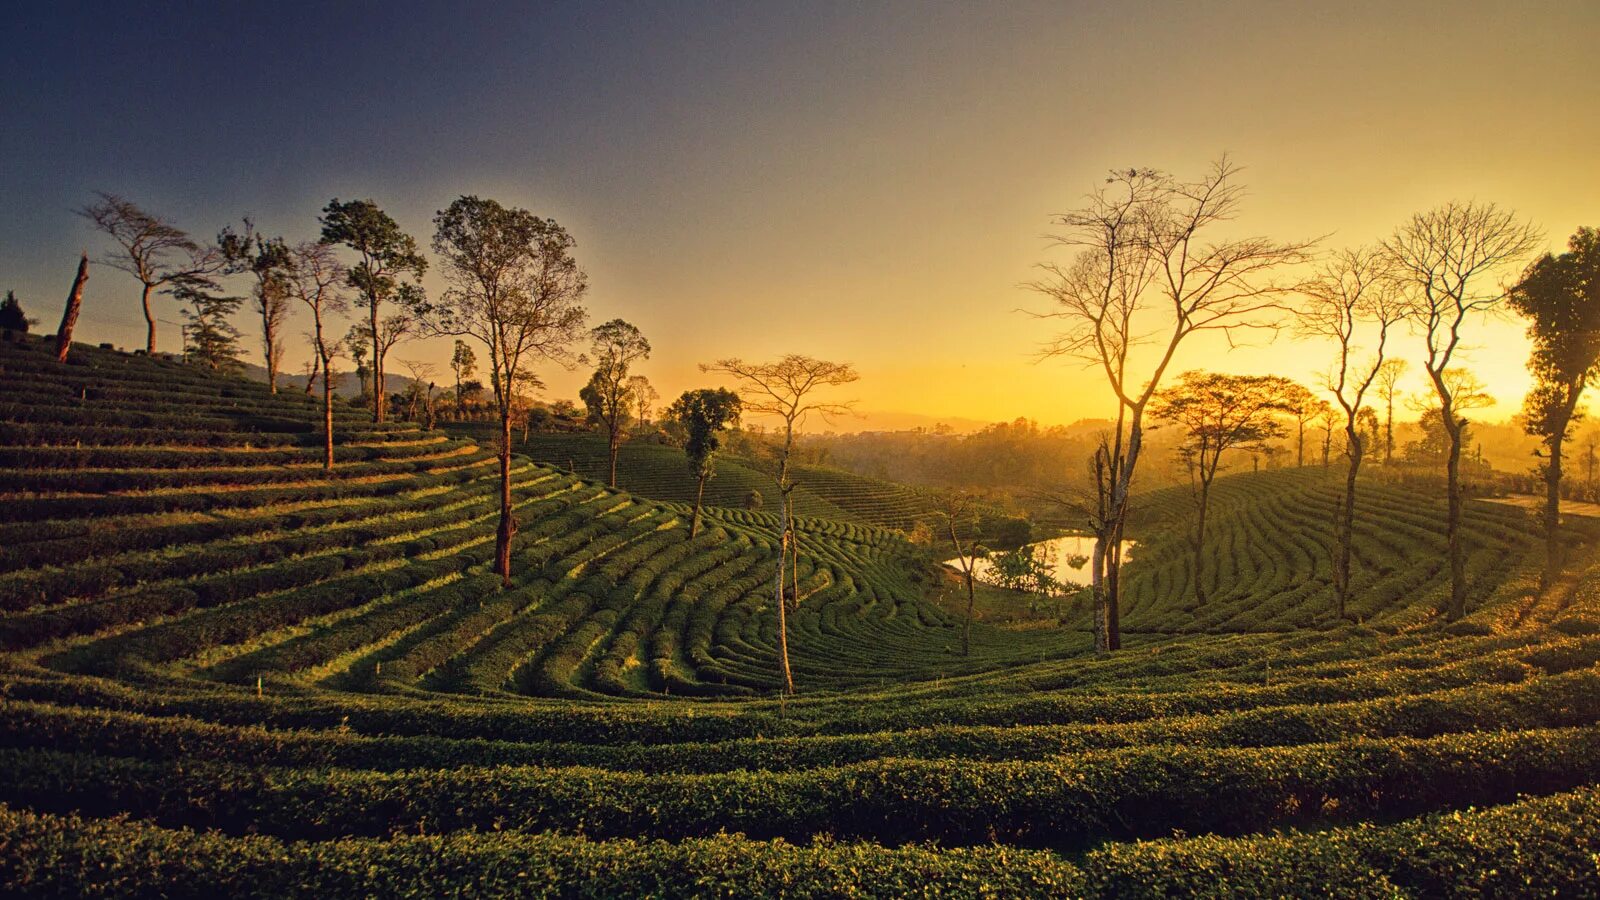 Country tours. Шри Ланка чайные плантации. Цейлонские плантации Шри Ланка. Чайные плантации Шри Ланки. Цейлонские чайные плантации.